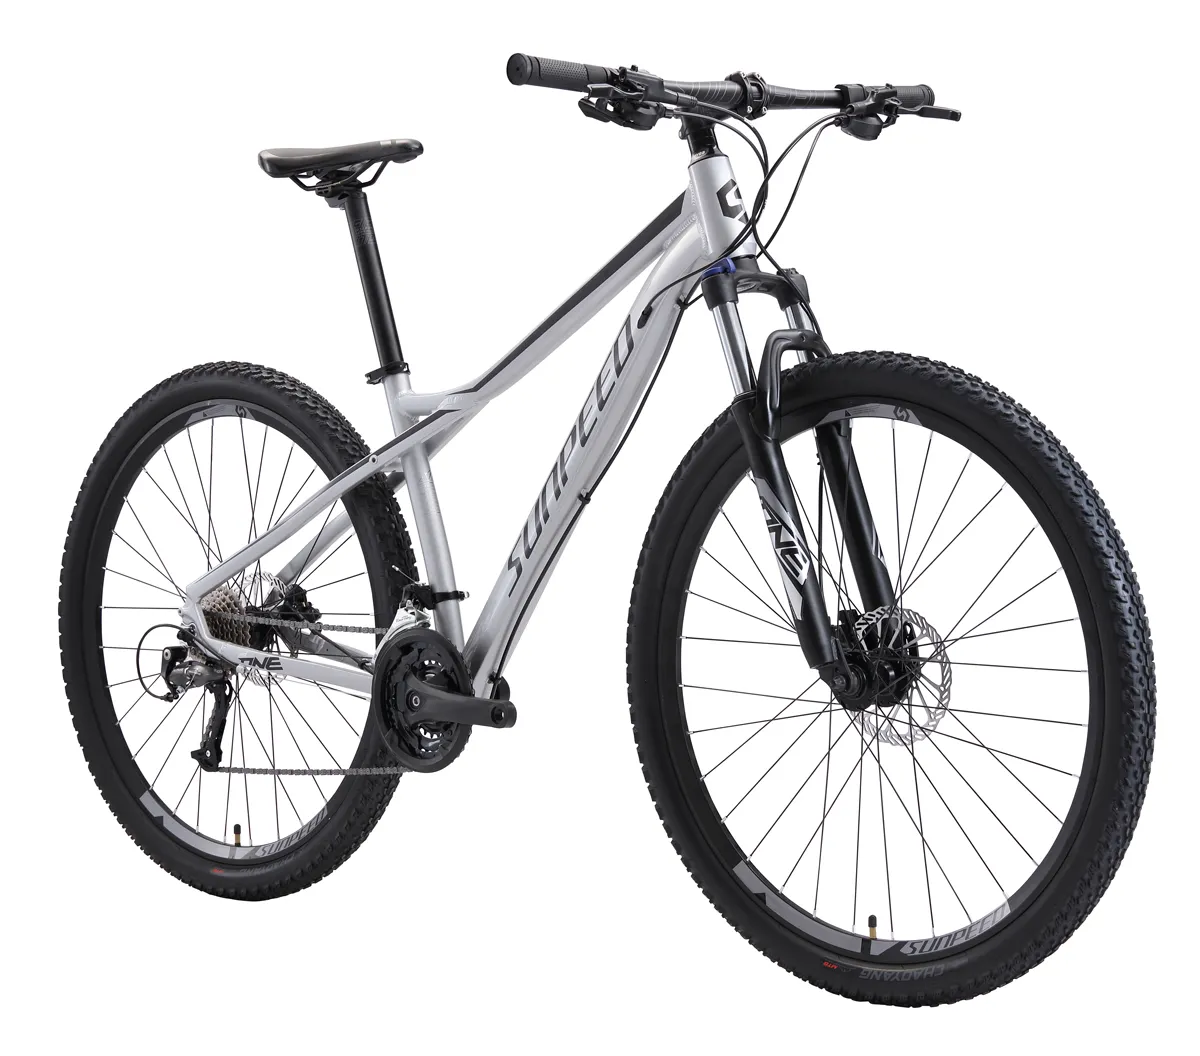 Sunpeed-Bicicleta de Montaña deportiva, 24 velocidades, 27,5/29 pulgadas, precio bajo, alta calidad